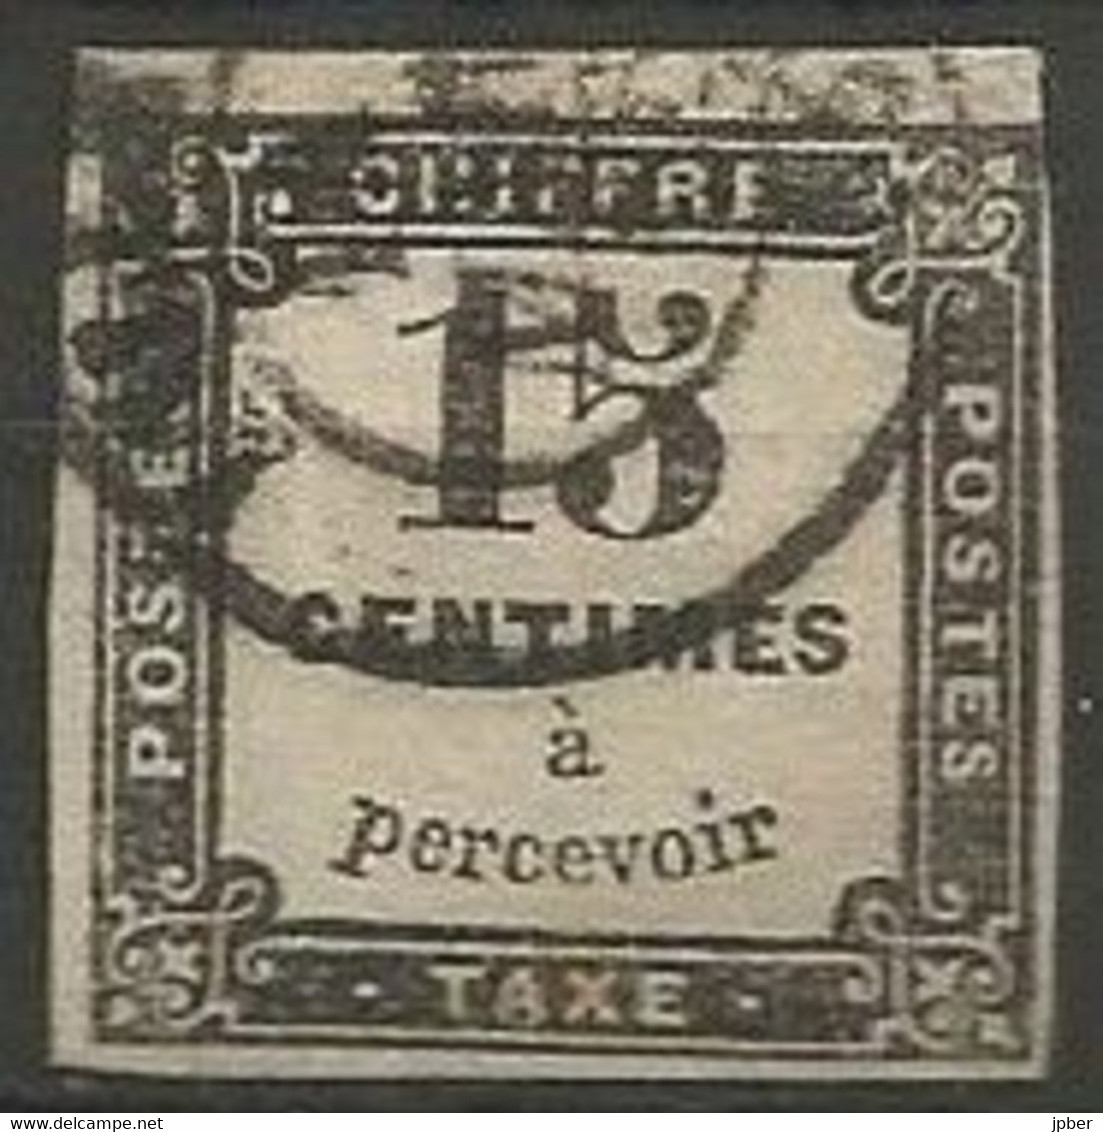 France - Timbres-Taxe - N° 3 Noir Typo - Obl. - 1859-1959 Oblitérés